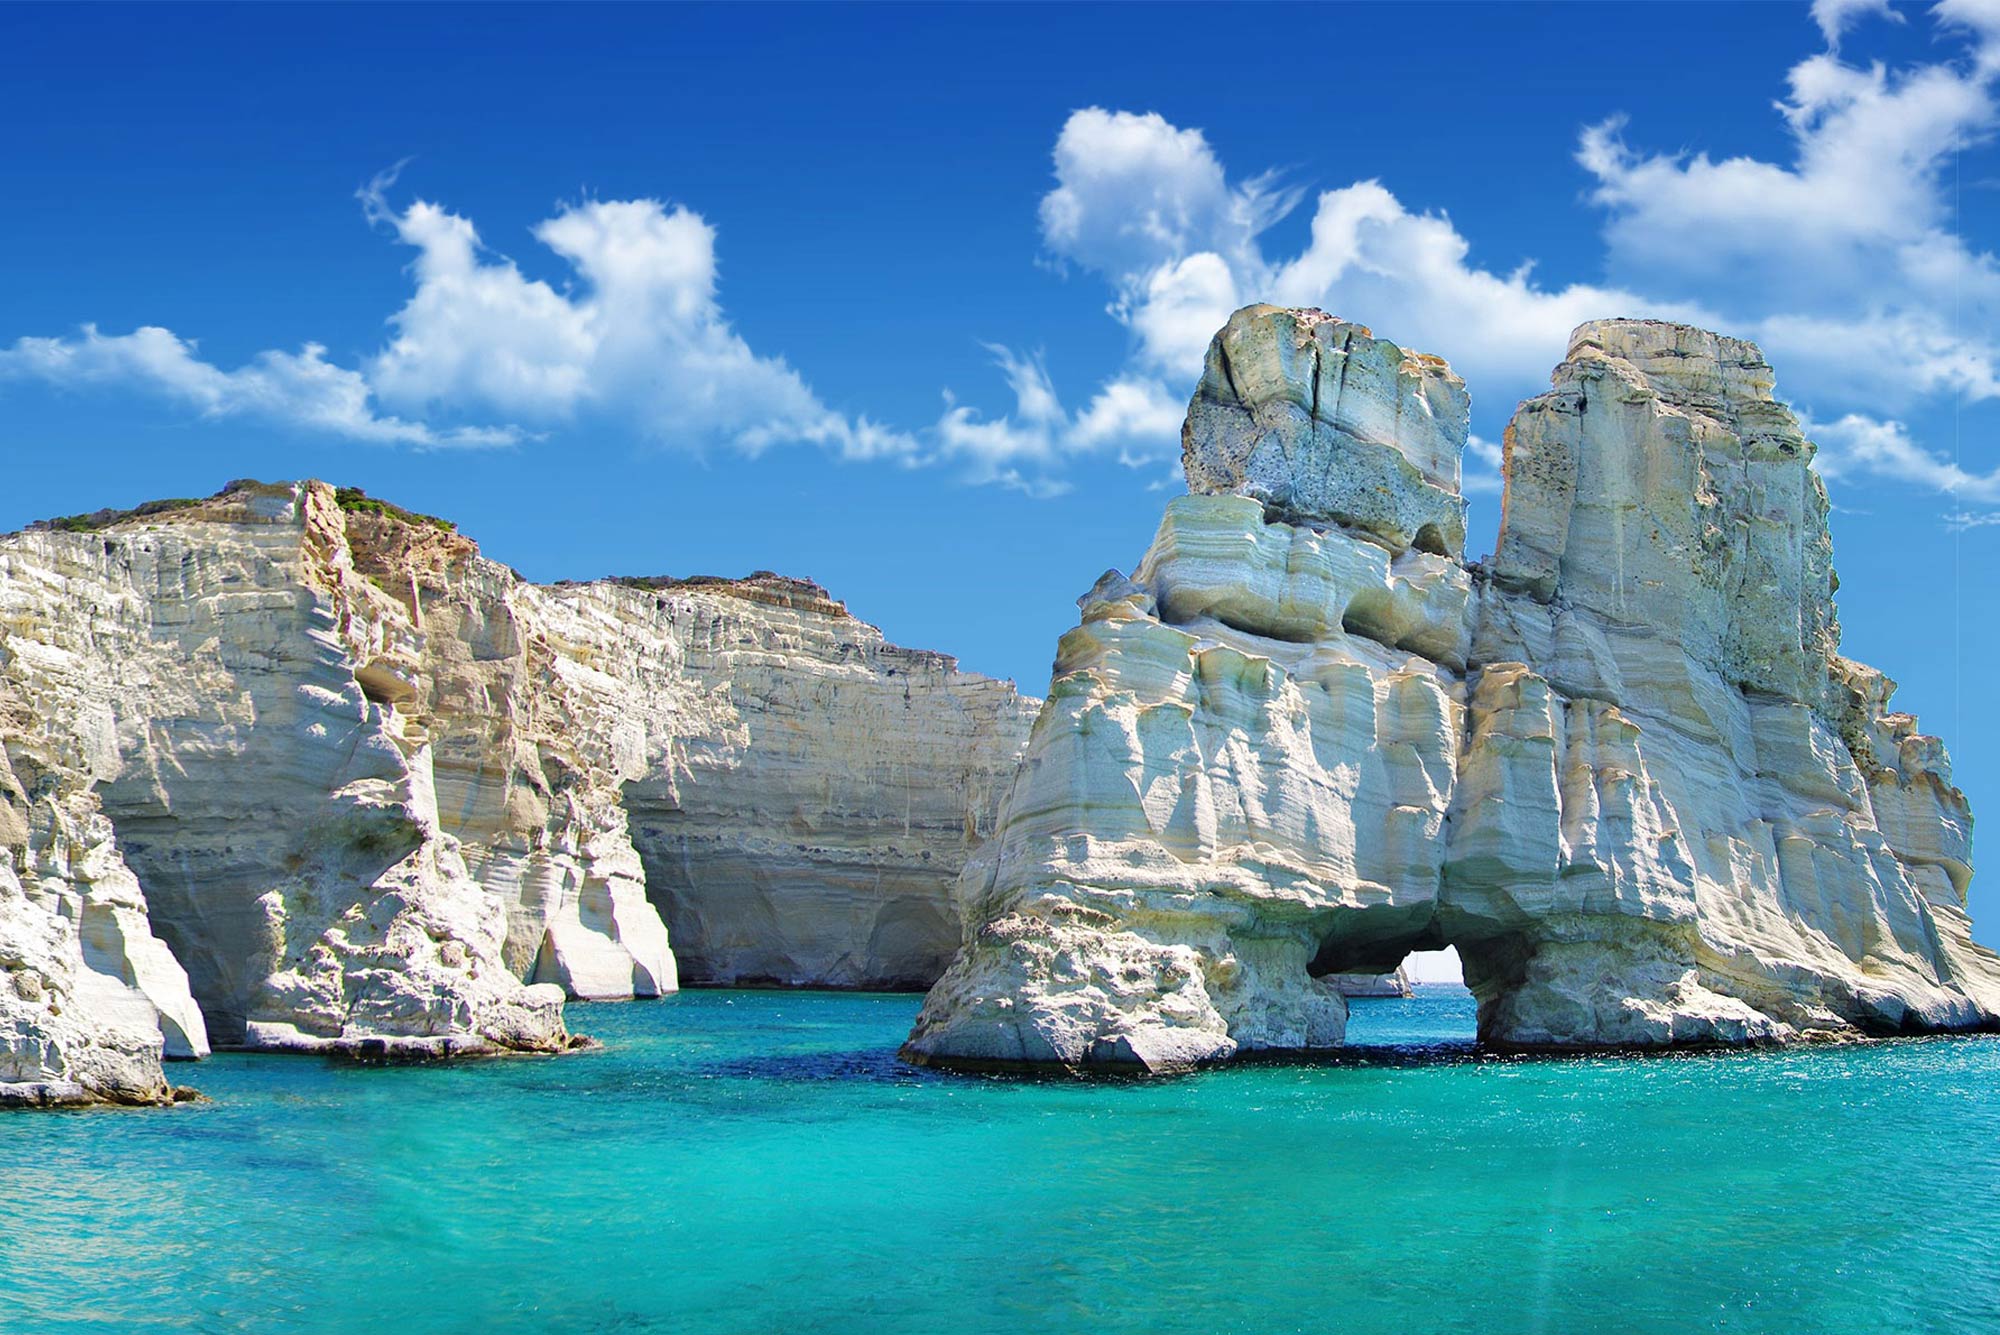 10 μέρη που πρέπει να επισκεφτείς στην Ελλάδα φέτος το καλοκαίρι σύμφωνα με το Forbes - Φωτογραφία 5